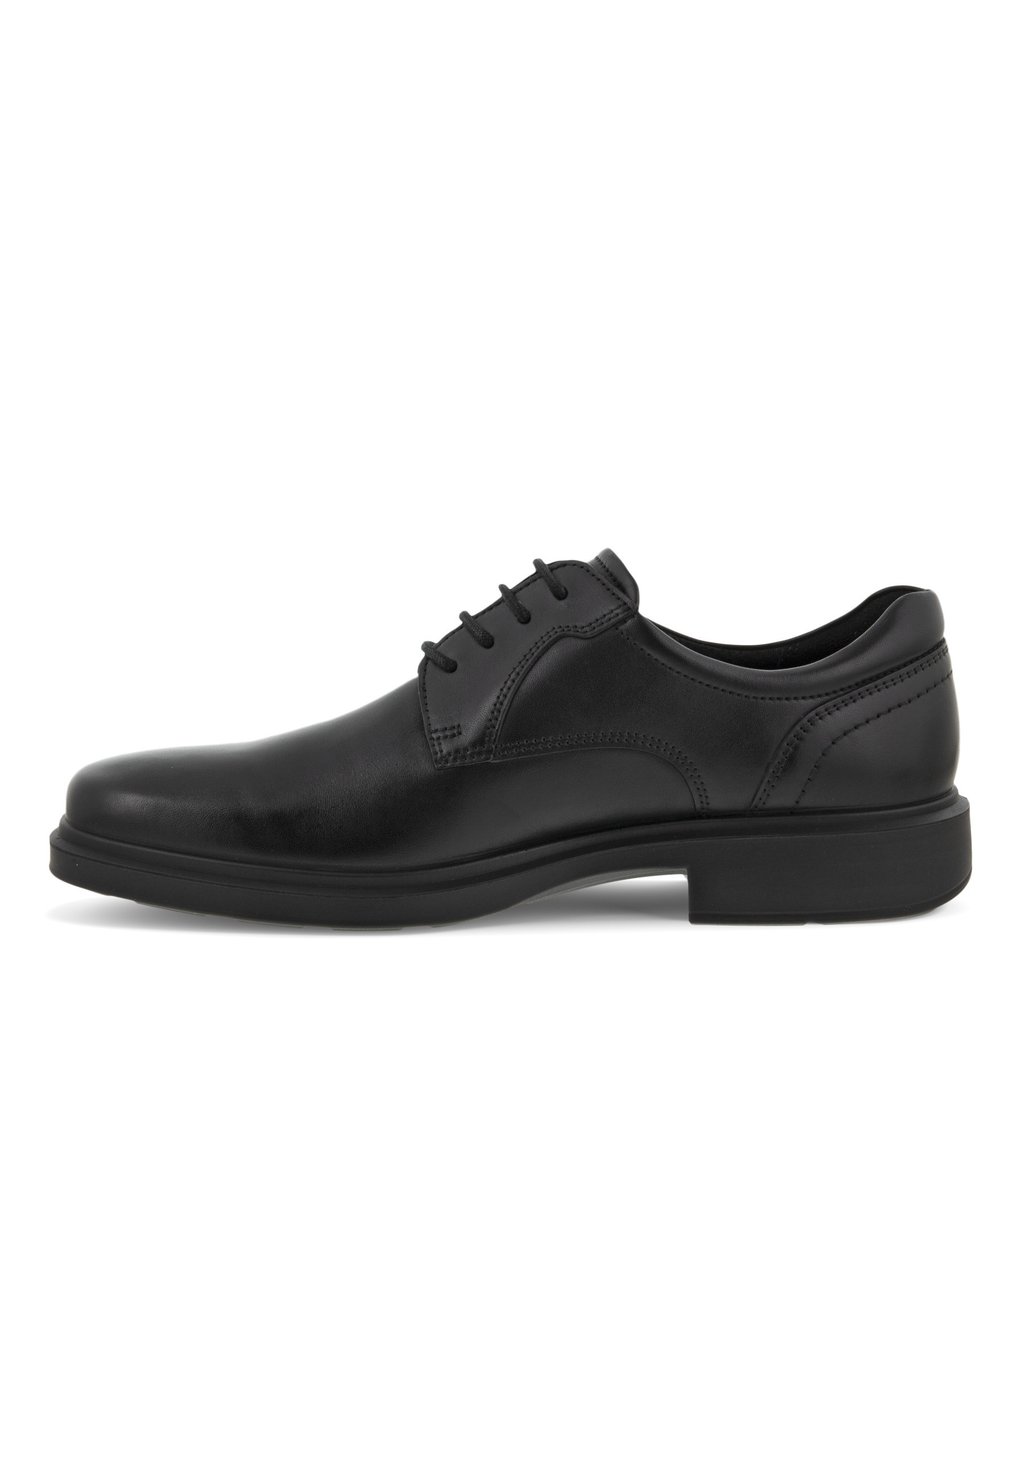 Деловые туфли на шнуровке HELSINKI ECCO, цвет black